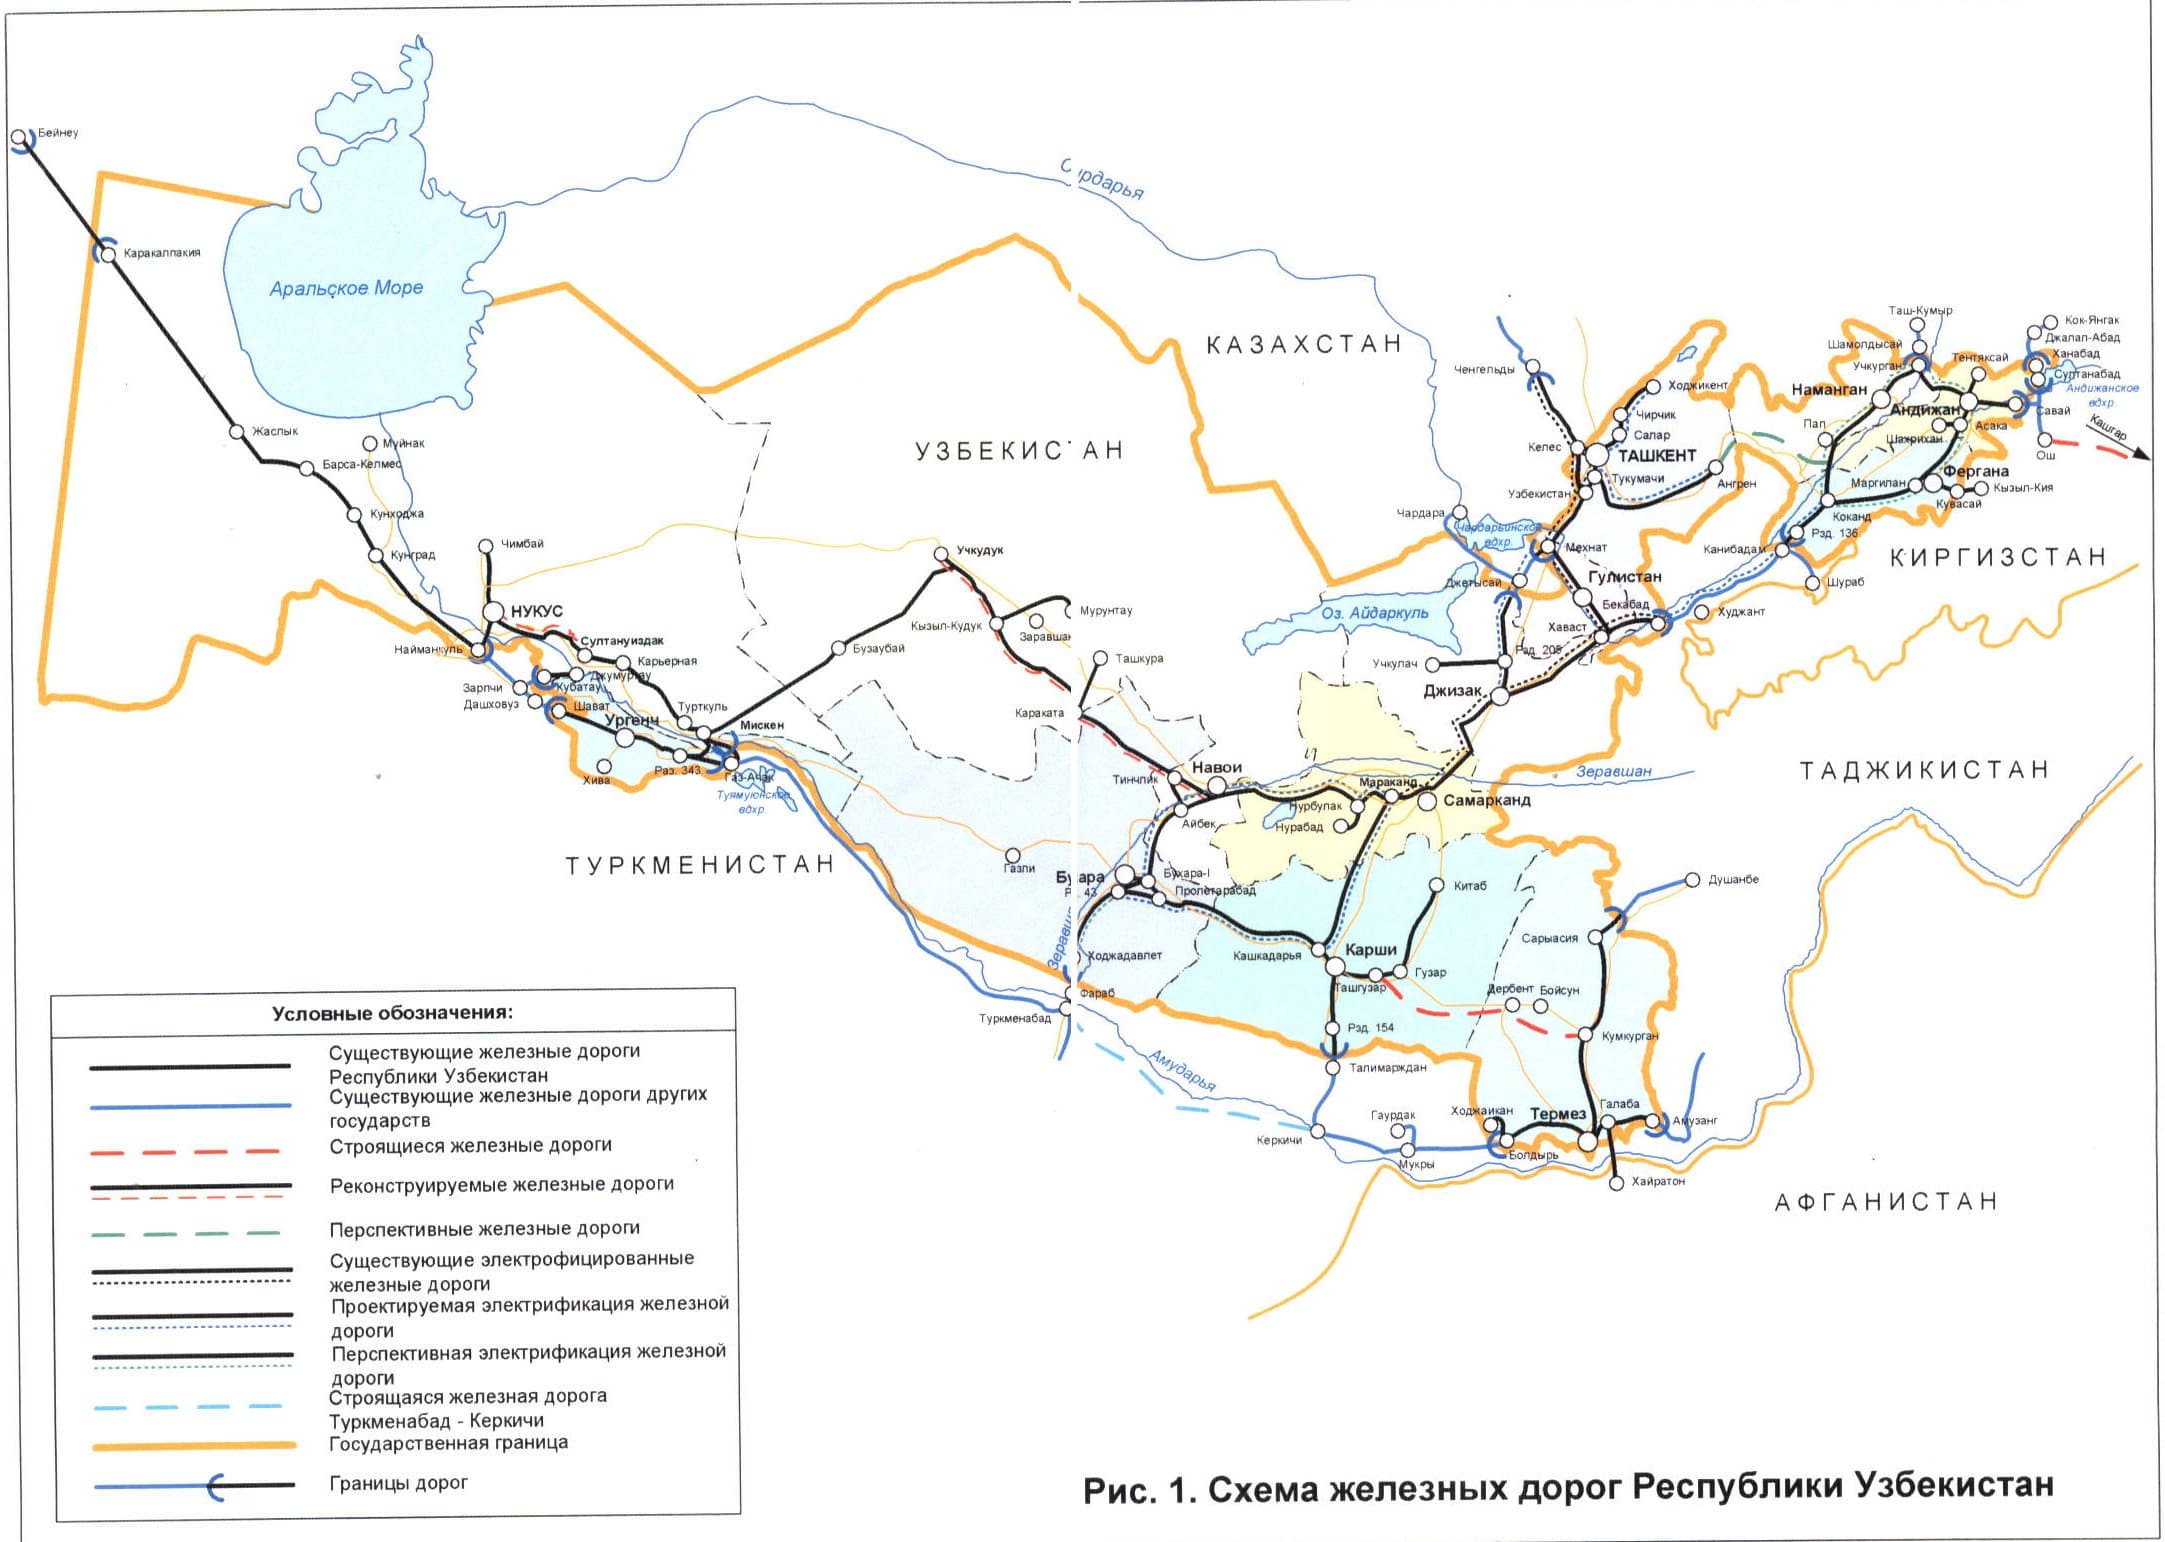 Карта - схема железных дорог Узбекистана. Вокзалы. Справочные телефоны